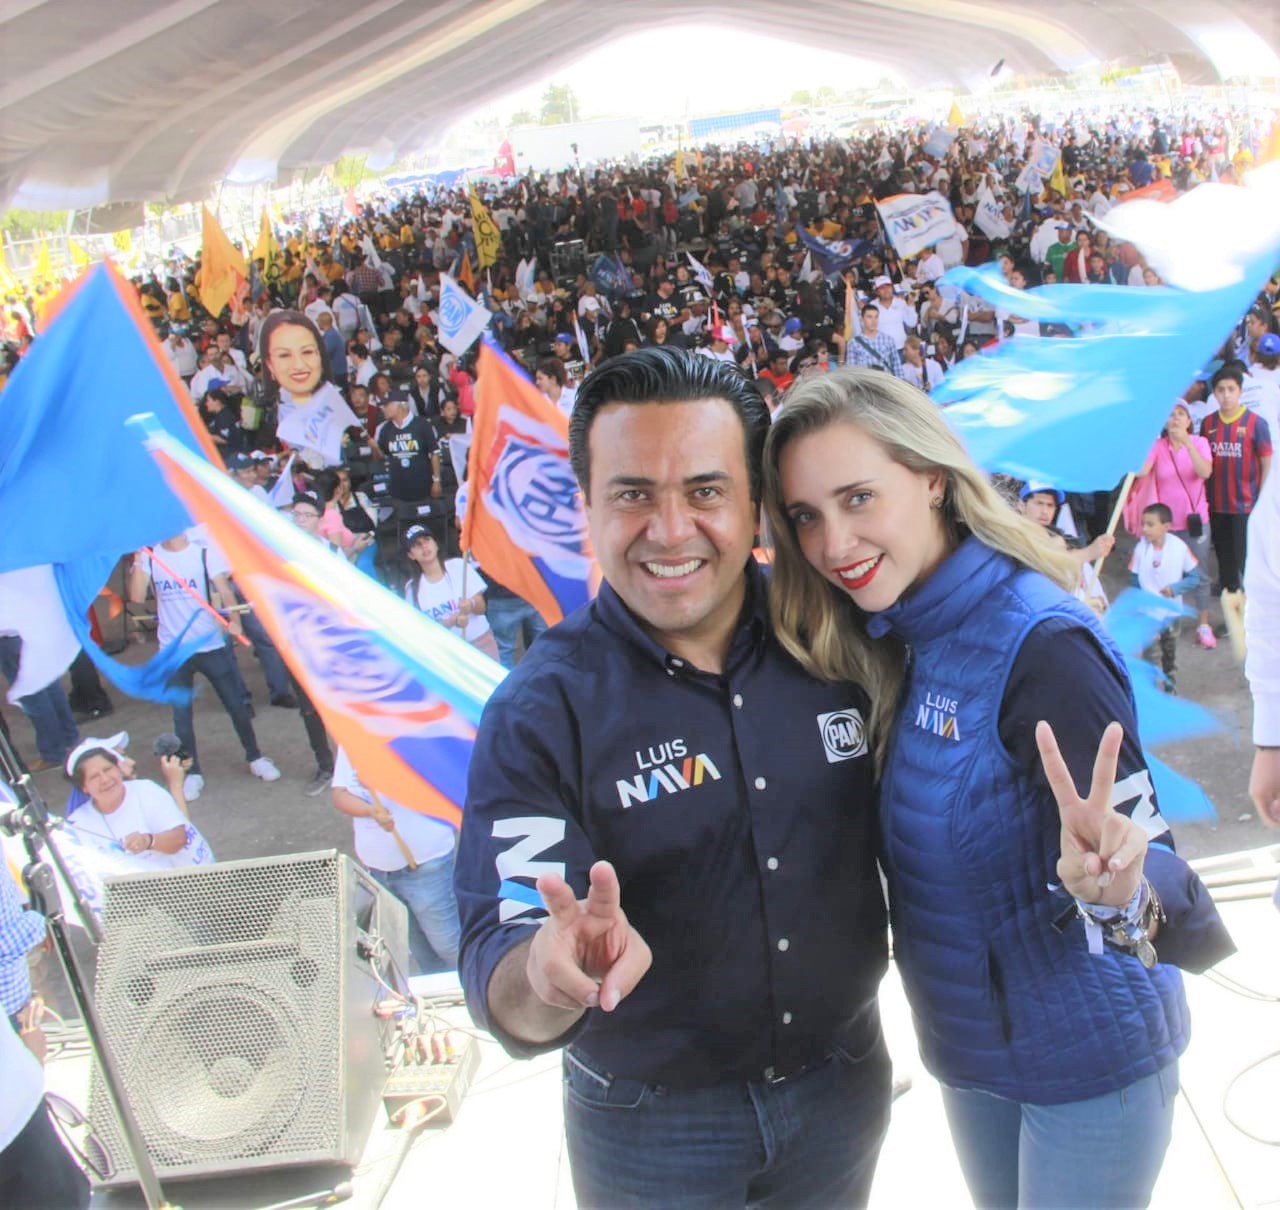 "Querétaro ya decidió que seguirá siendo azul": Luis Nava